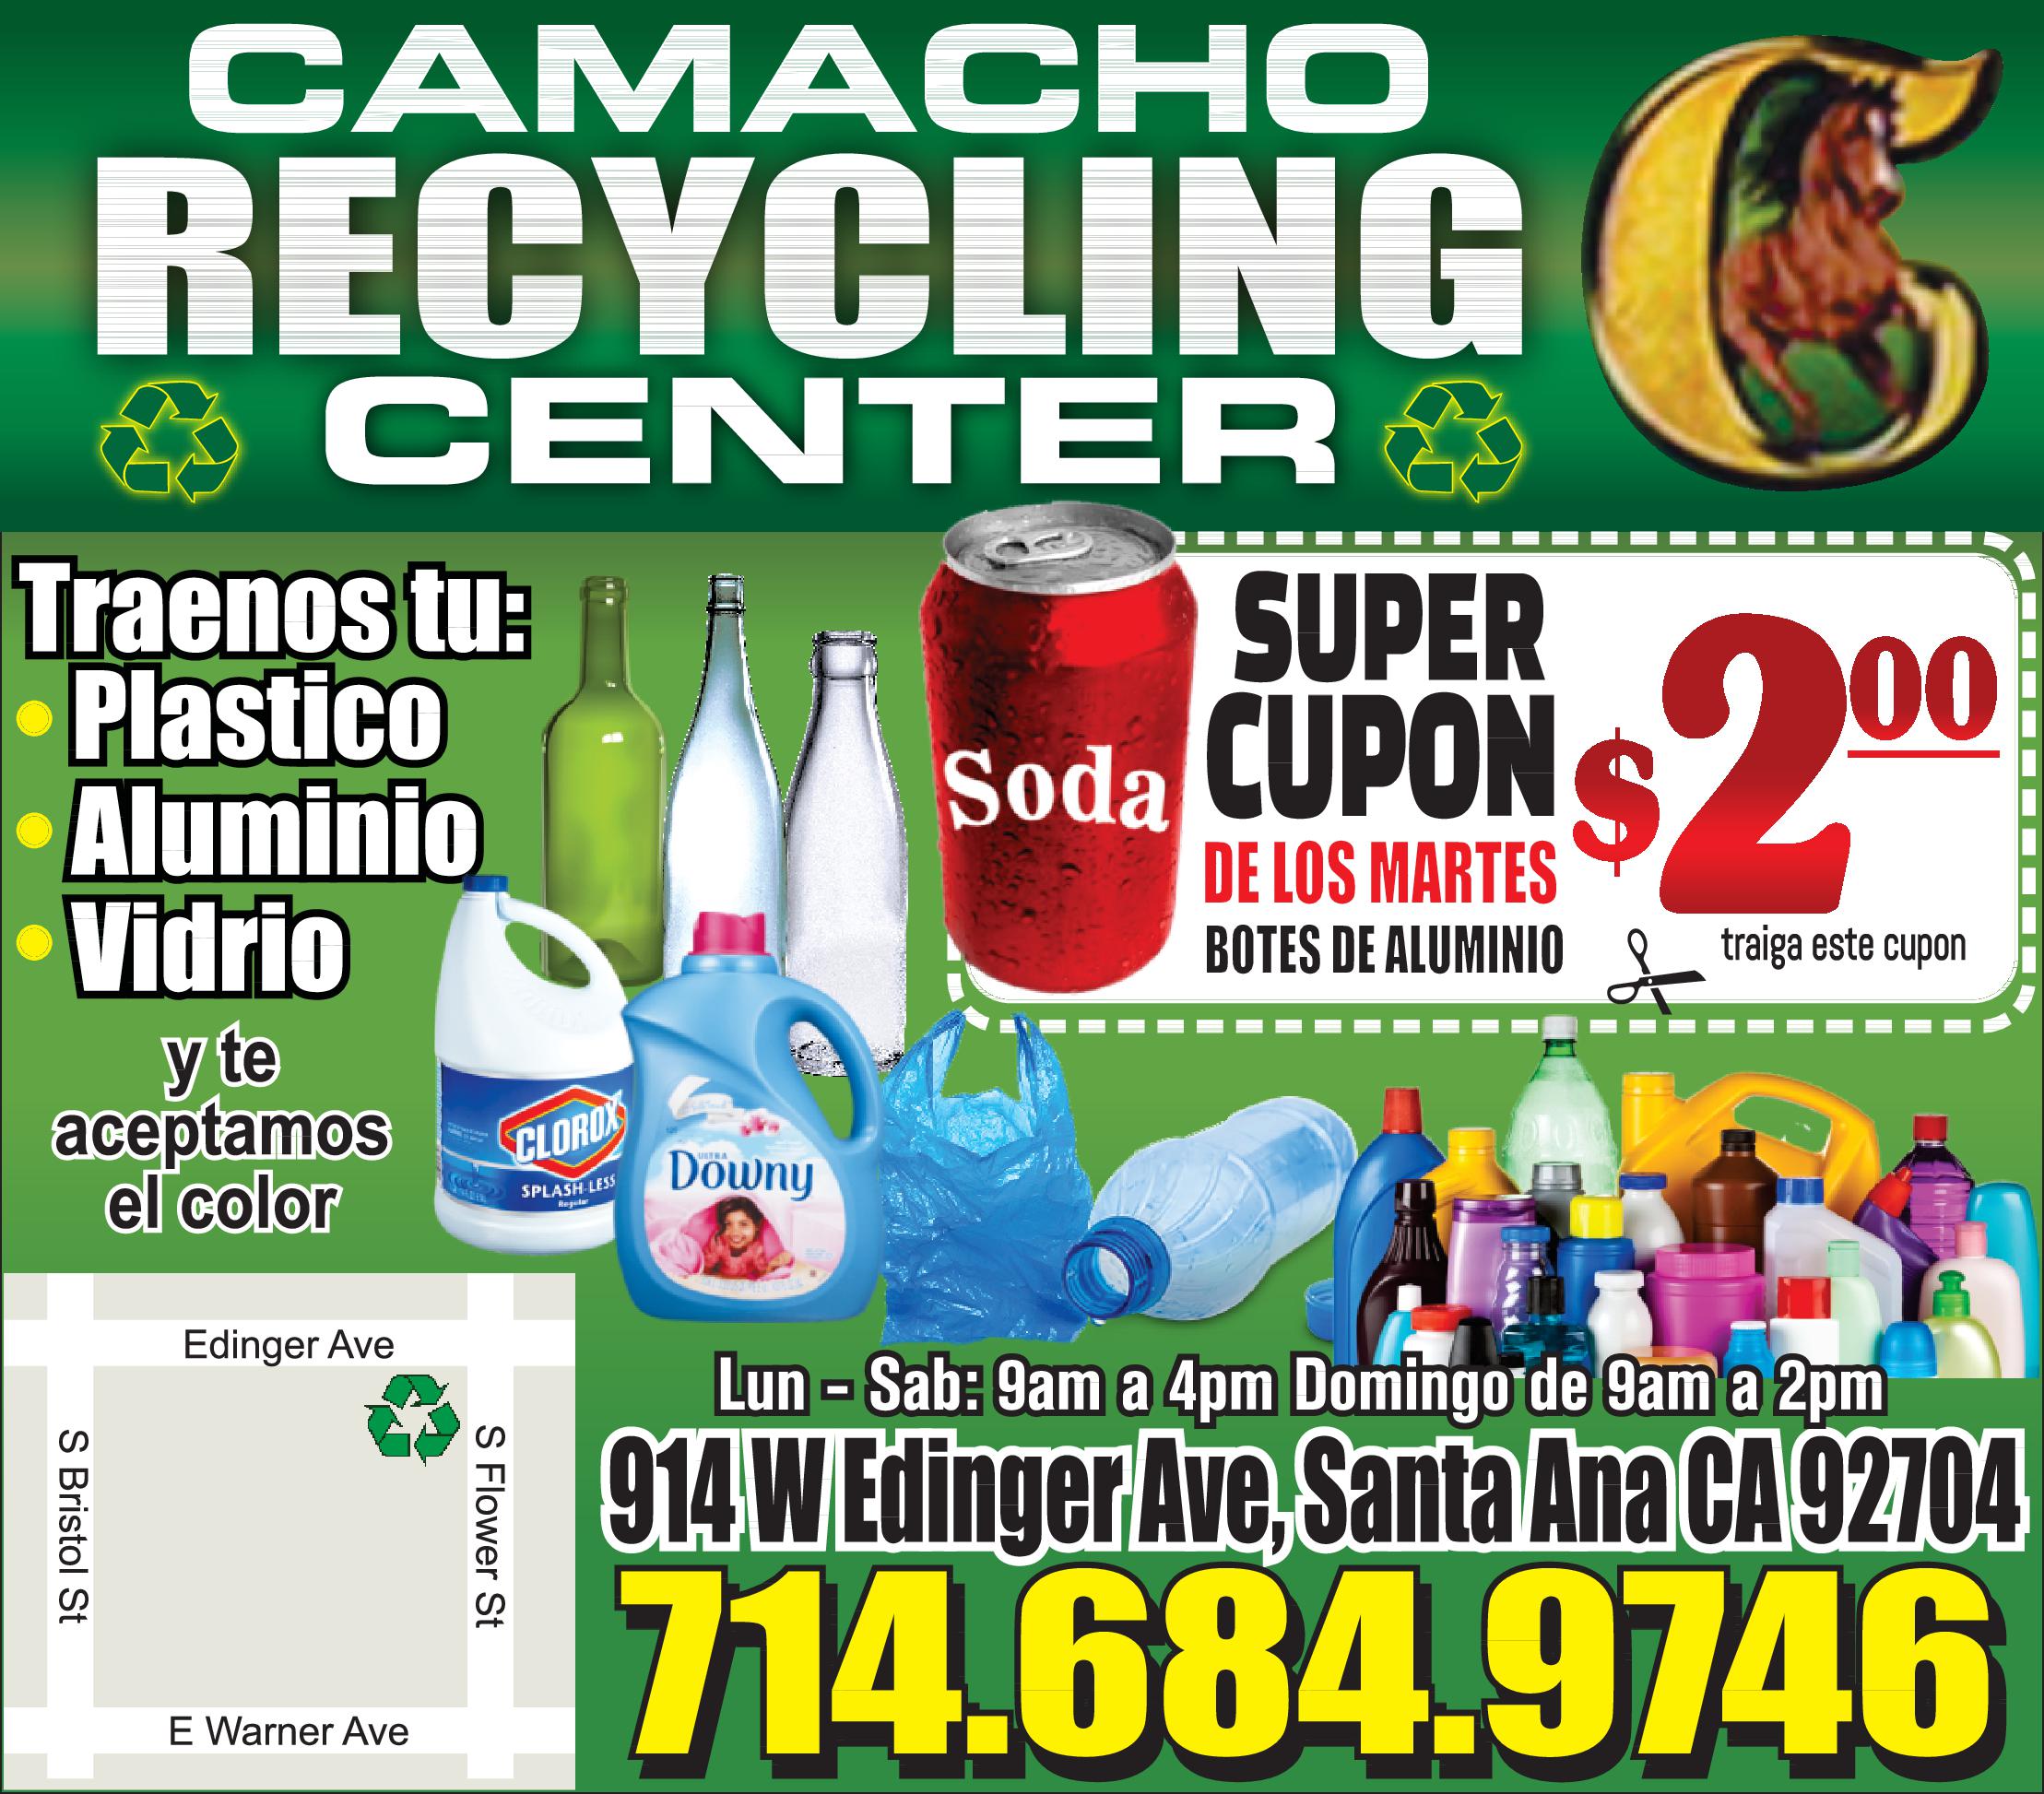 Camacho Recycling Center